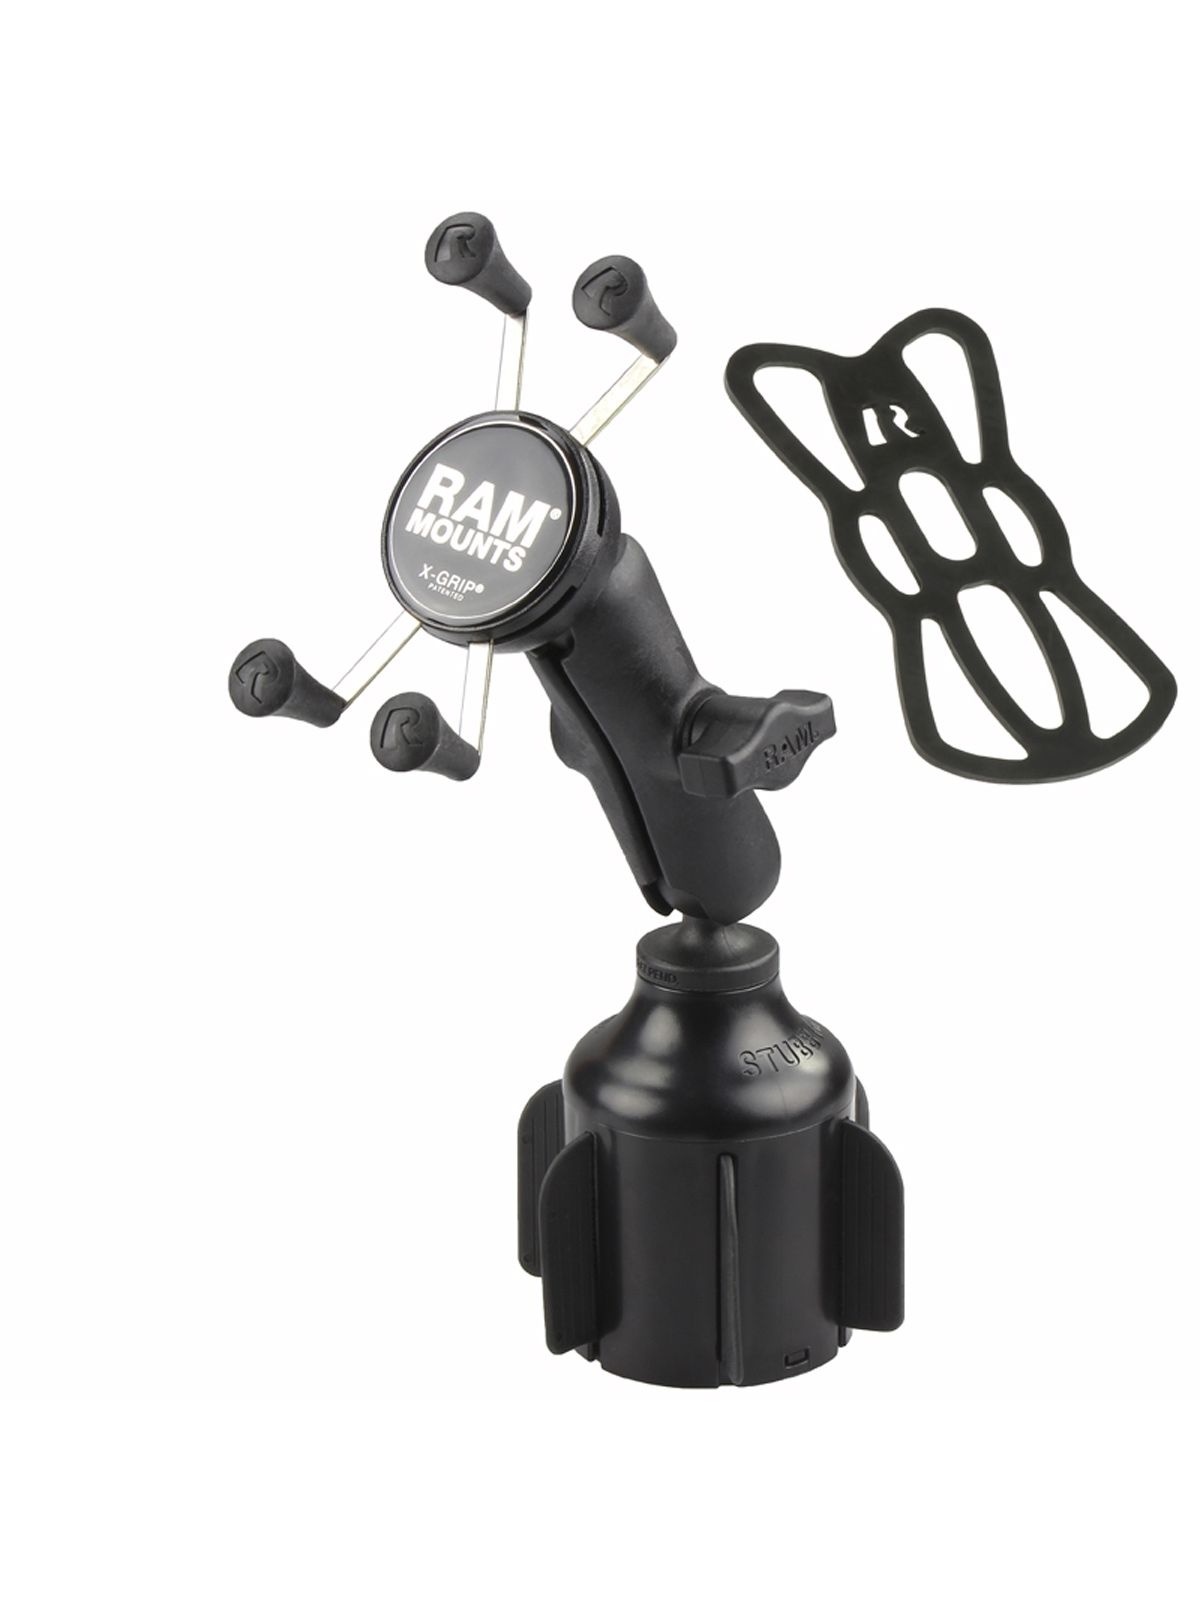 RAM Mounts Fahrzeug-Halterung mit X-Grip Halteklammer für Smartphones bis 82,6 mm Breite - B-Kugel (1 Zoll), Basis für Getränkehalter, mittlerer Verbindungsarm